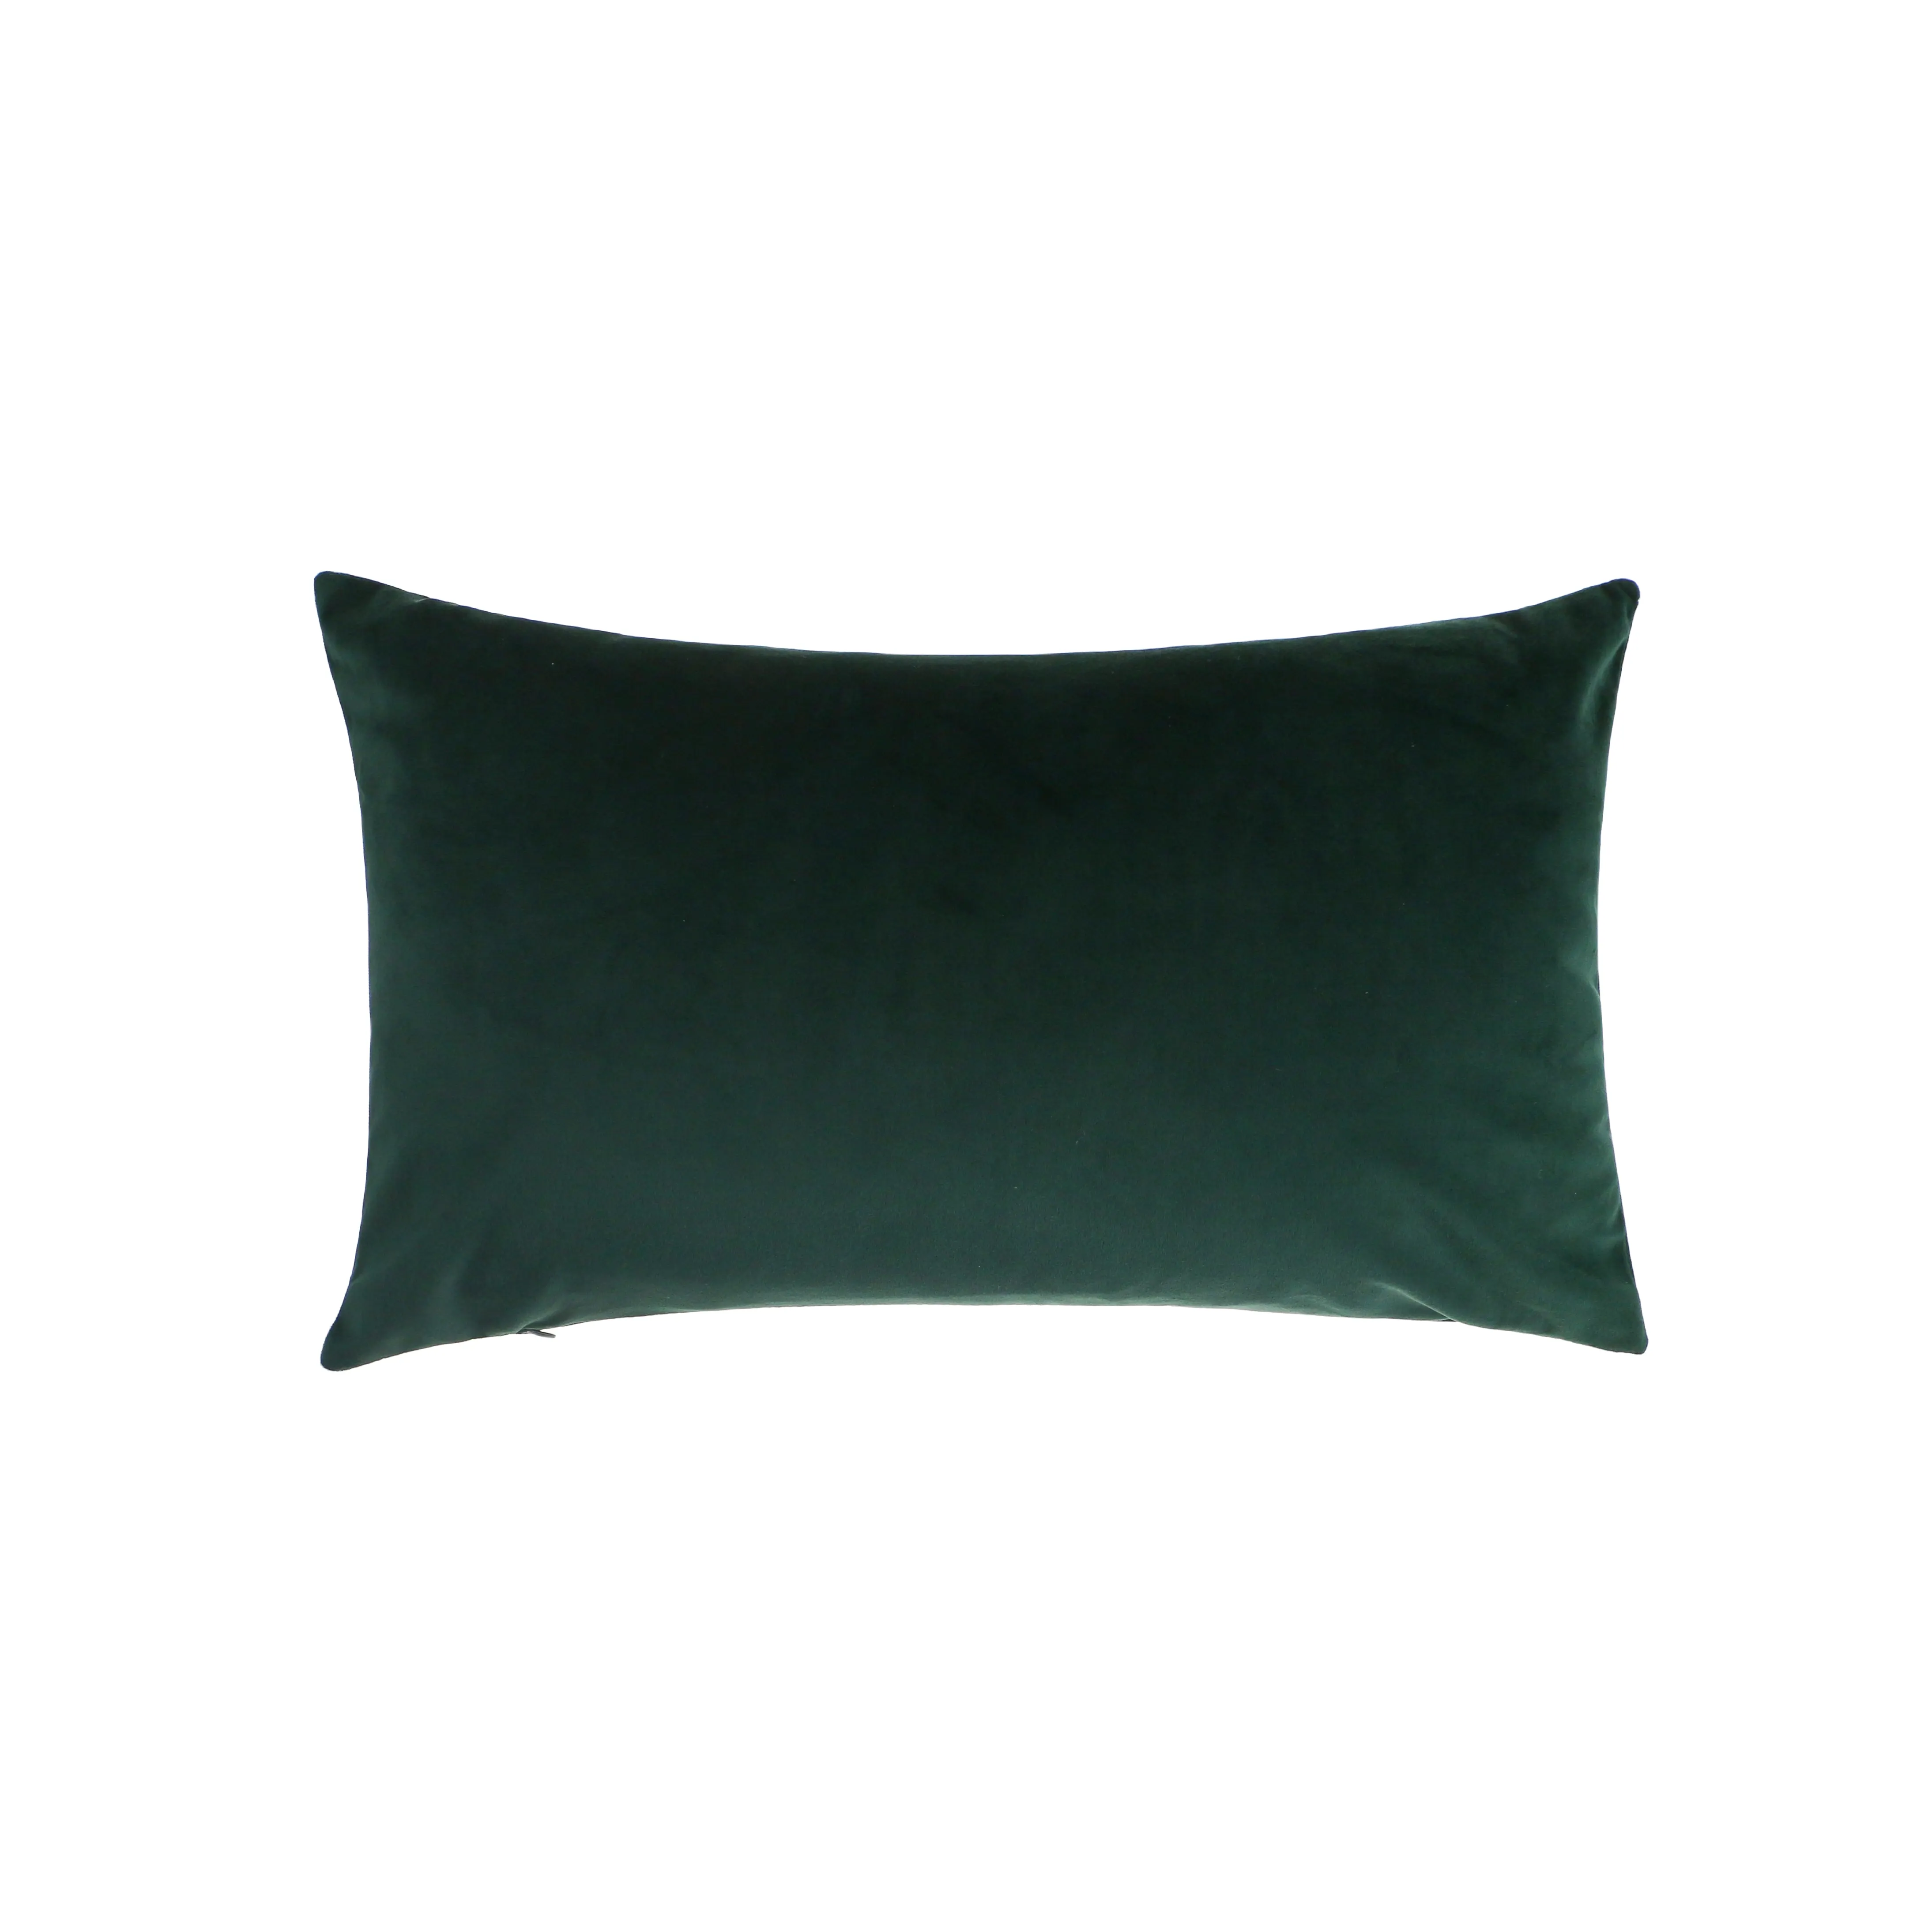 Funda de almohada de terciopelo liso verde oscuro de 50*30cm, funda de cojín decorativa al por mayor de fábrica